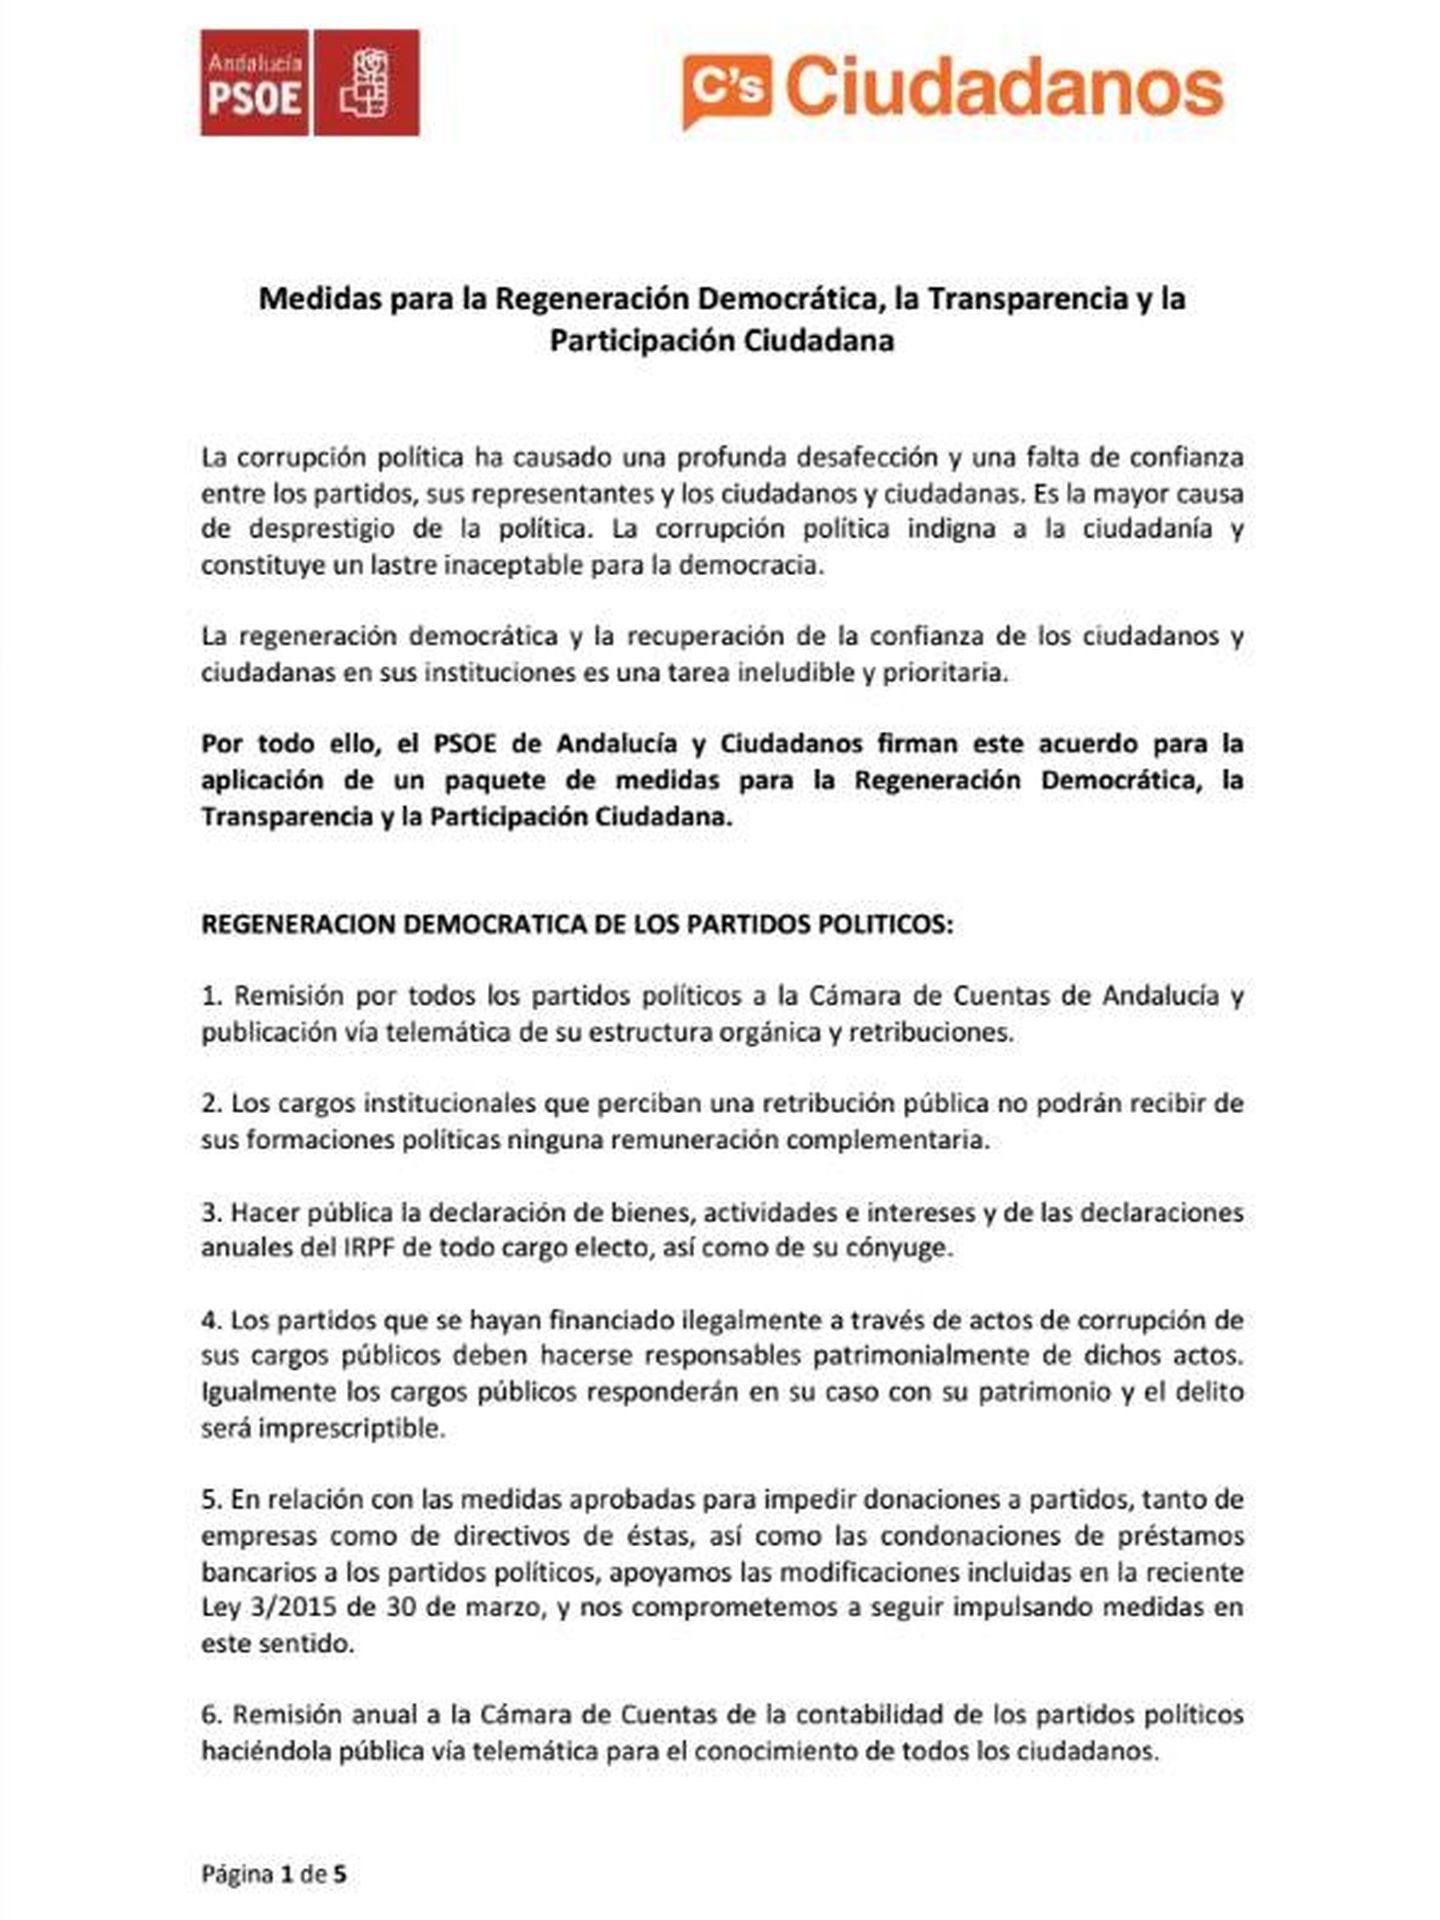 [Lea aquí el documento íntegro del pacto de Andalucía]